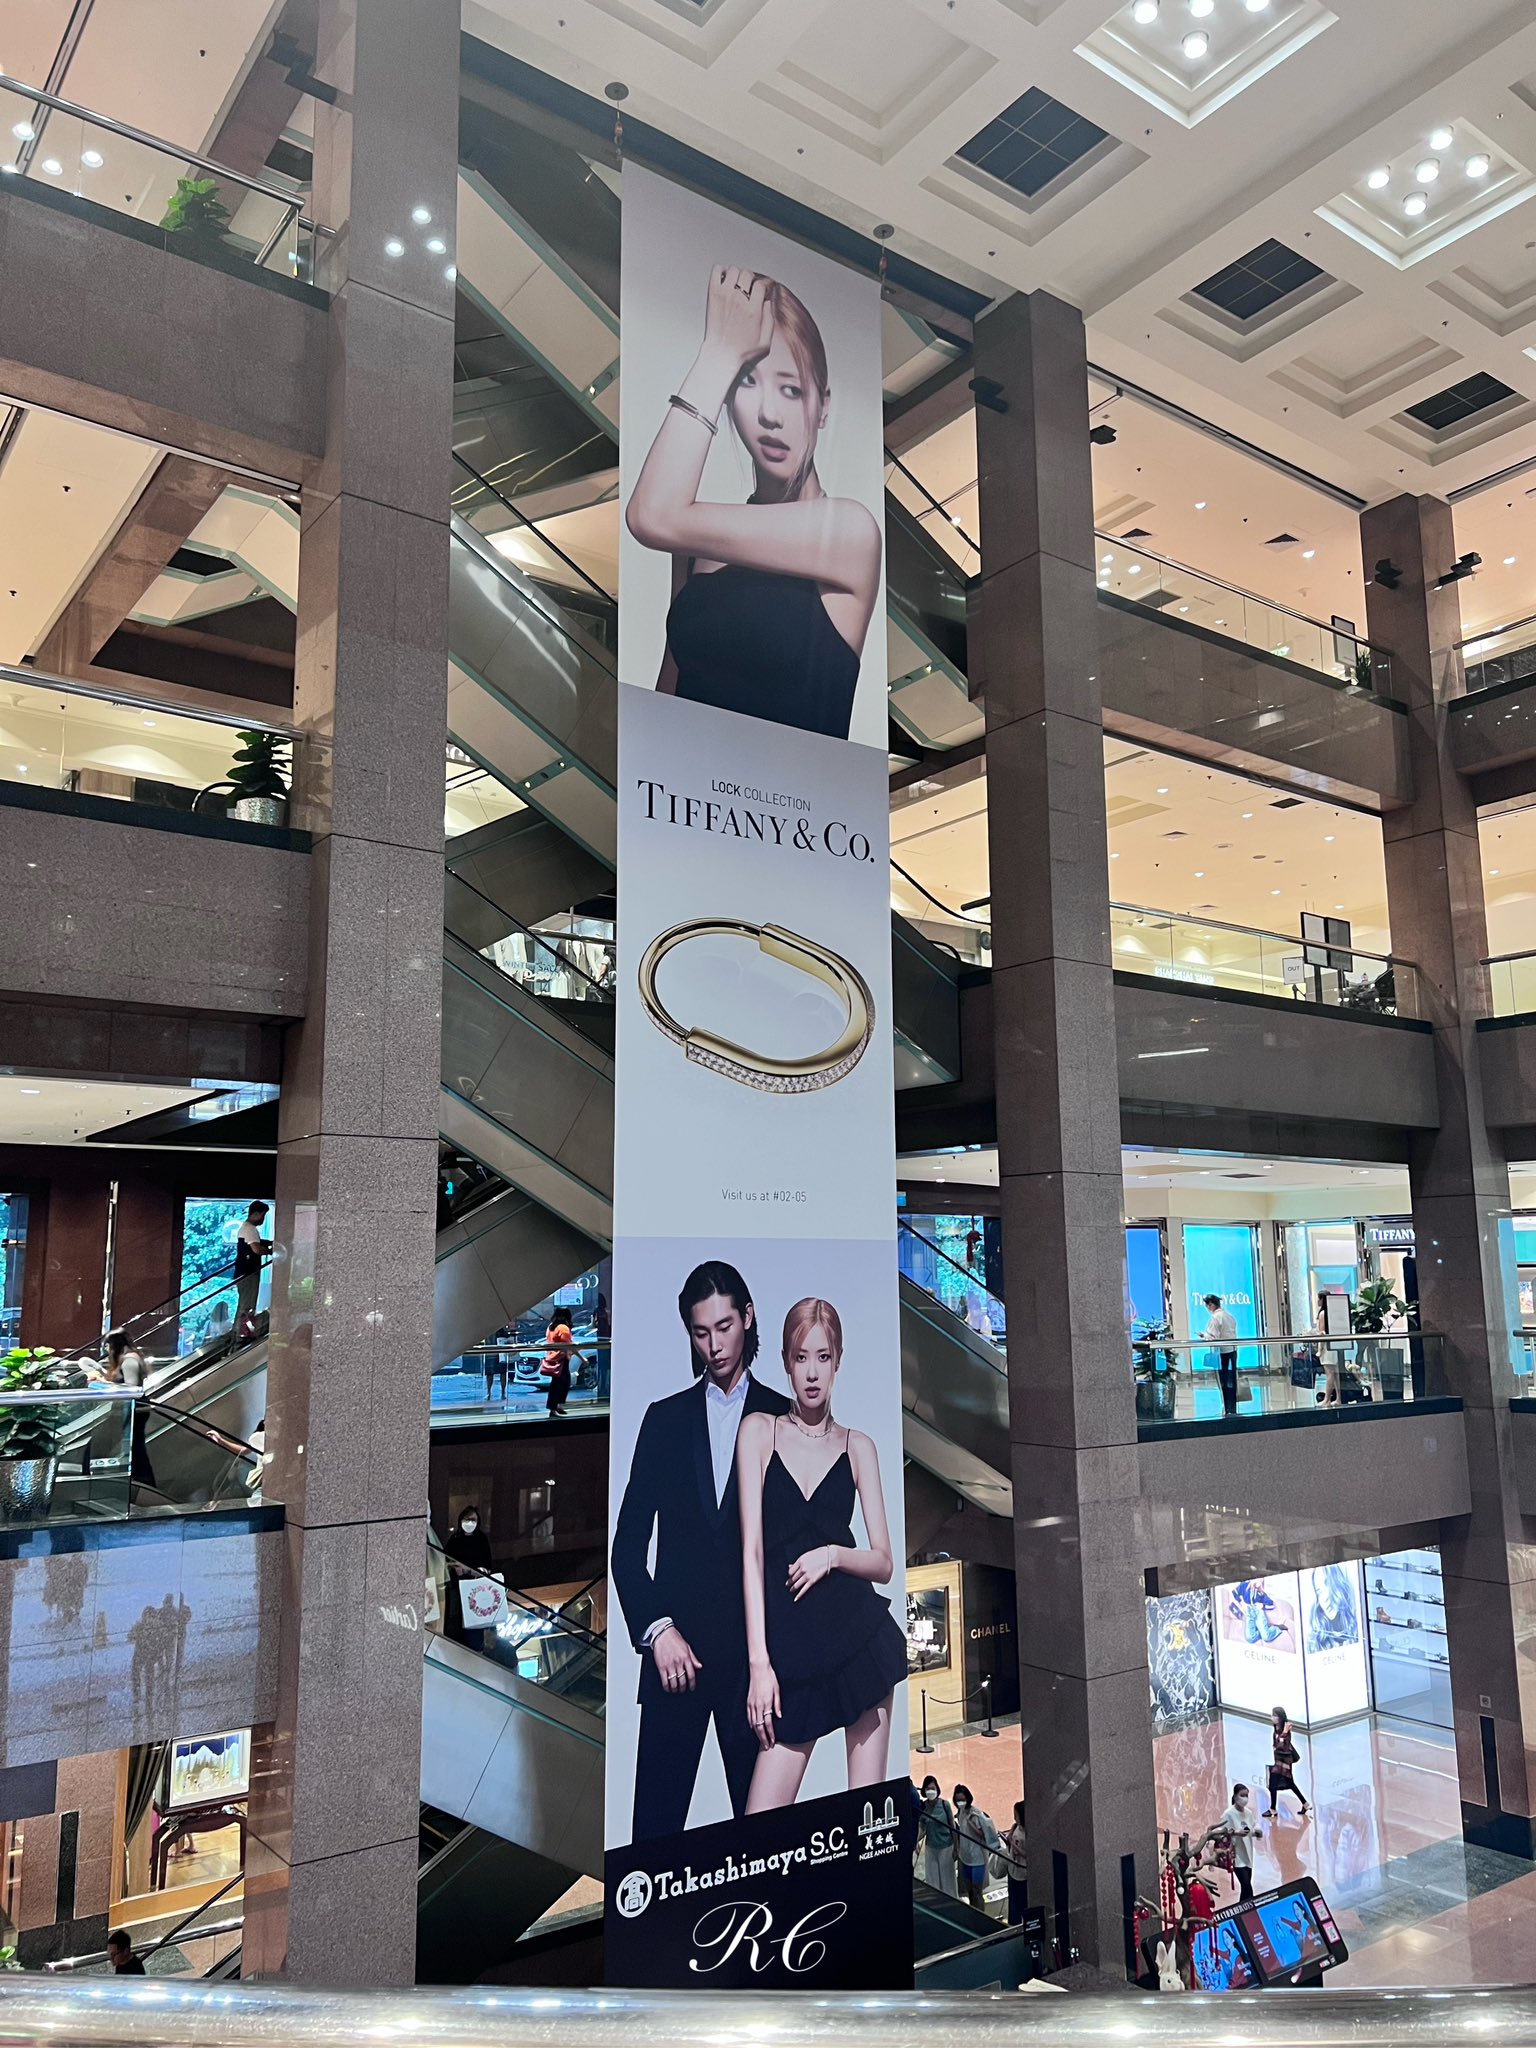 Takashimaya (Chanel shop) - Picture of Takashimaya Singapore